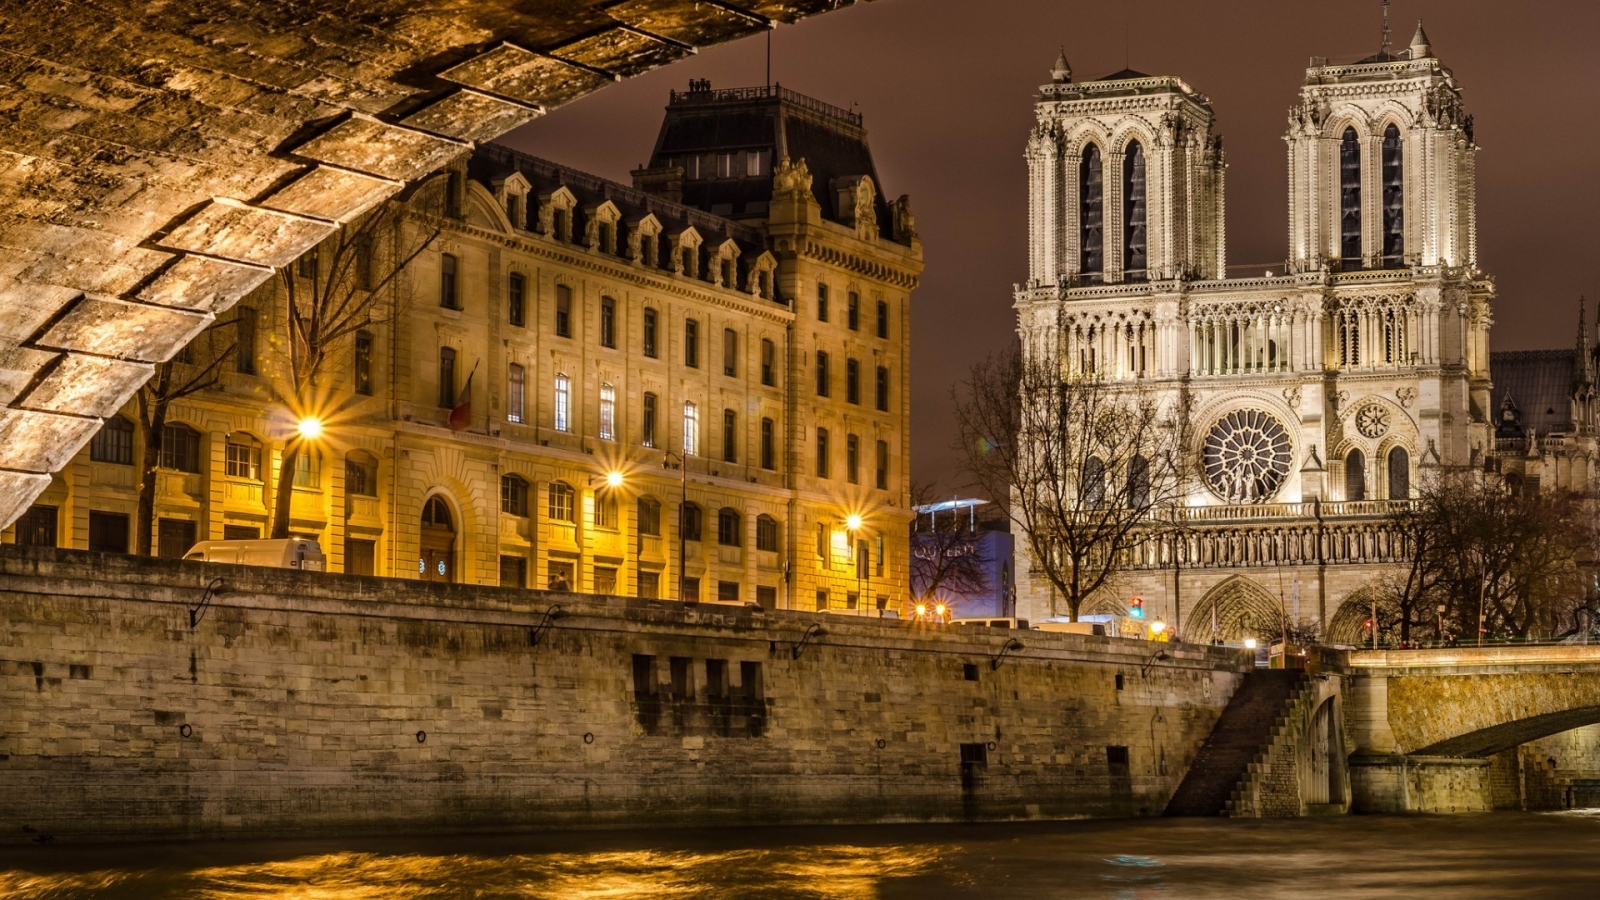 Notre Dame de Paris Front View for 1600 x 900 HDTV resolution